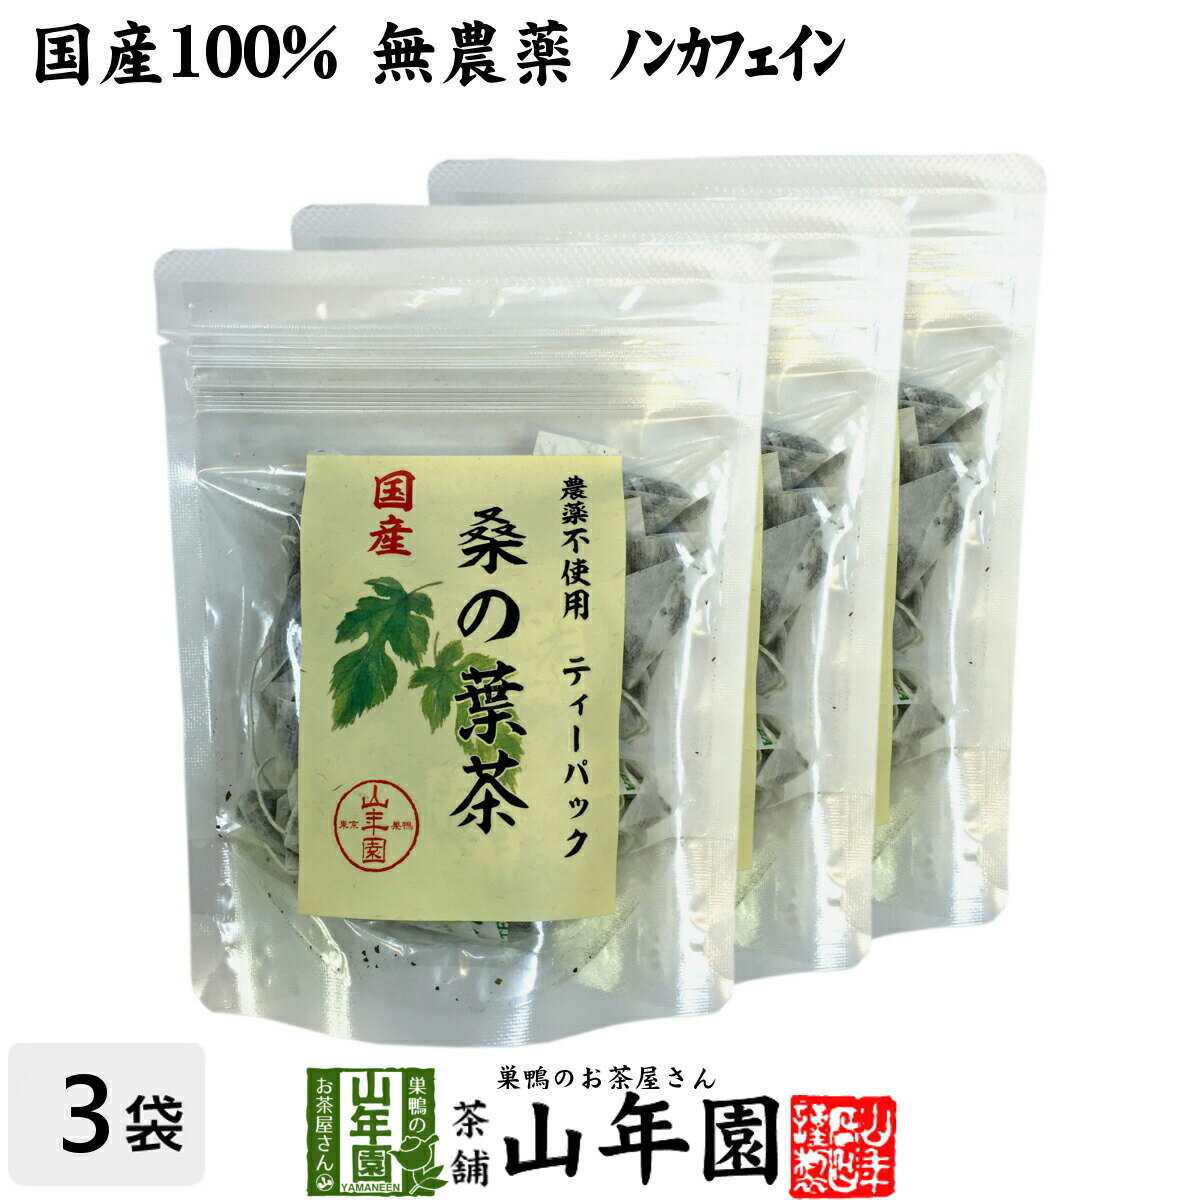 【国産 100%】桑の葉茶 